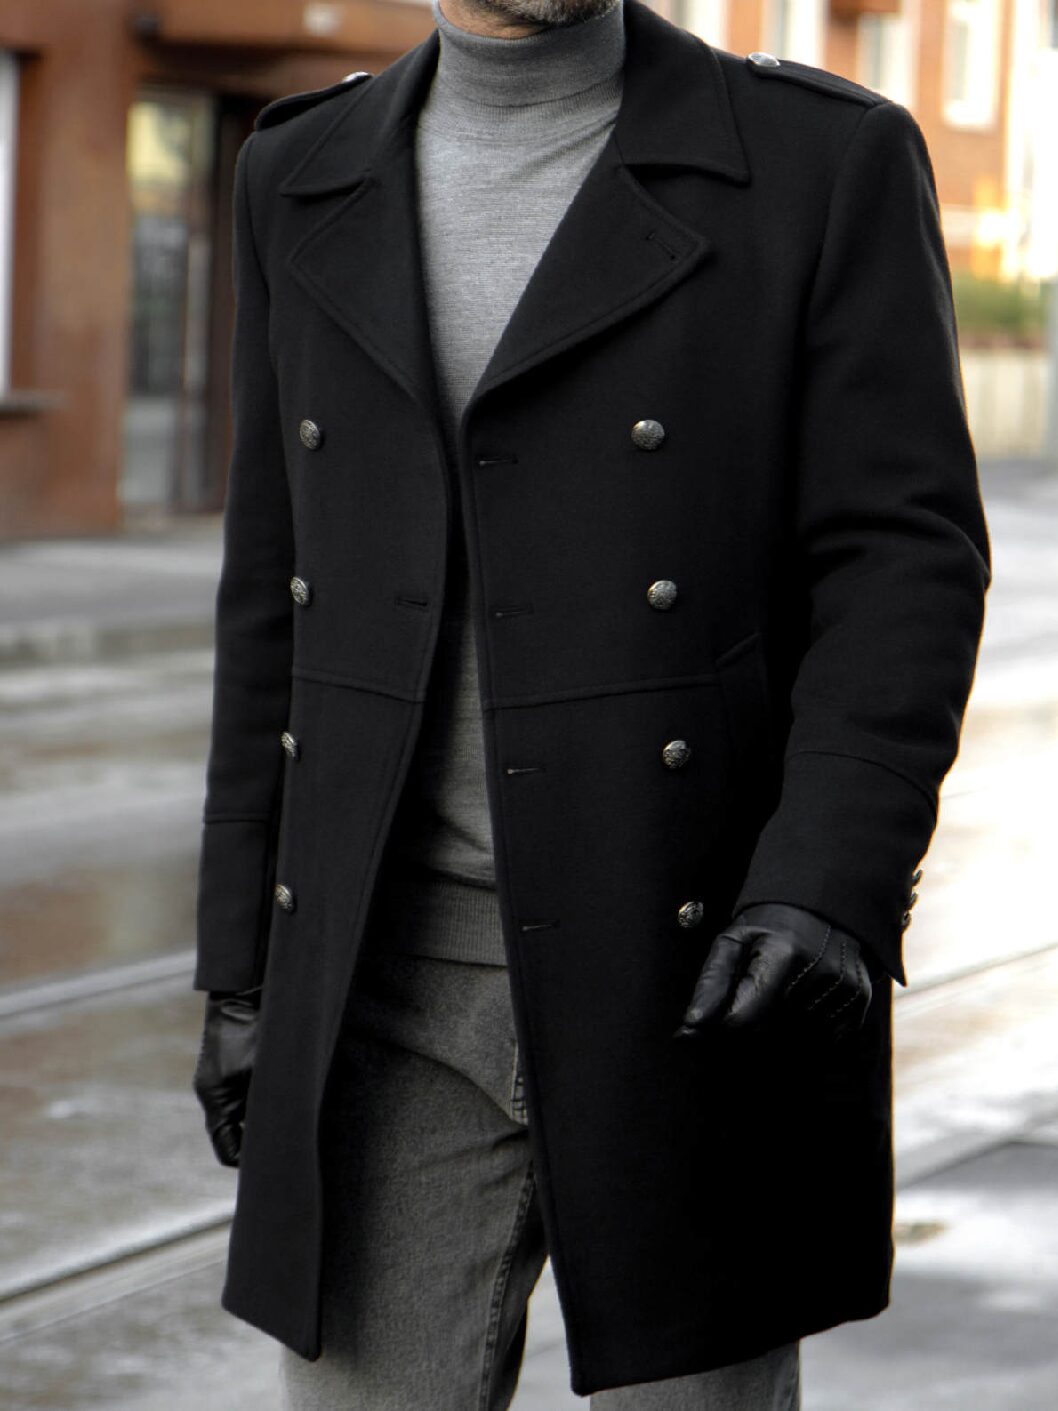 Мужское пальто-шинель черное. Арт.:6184